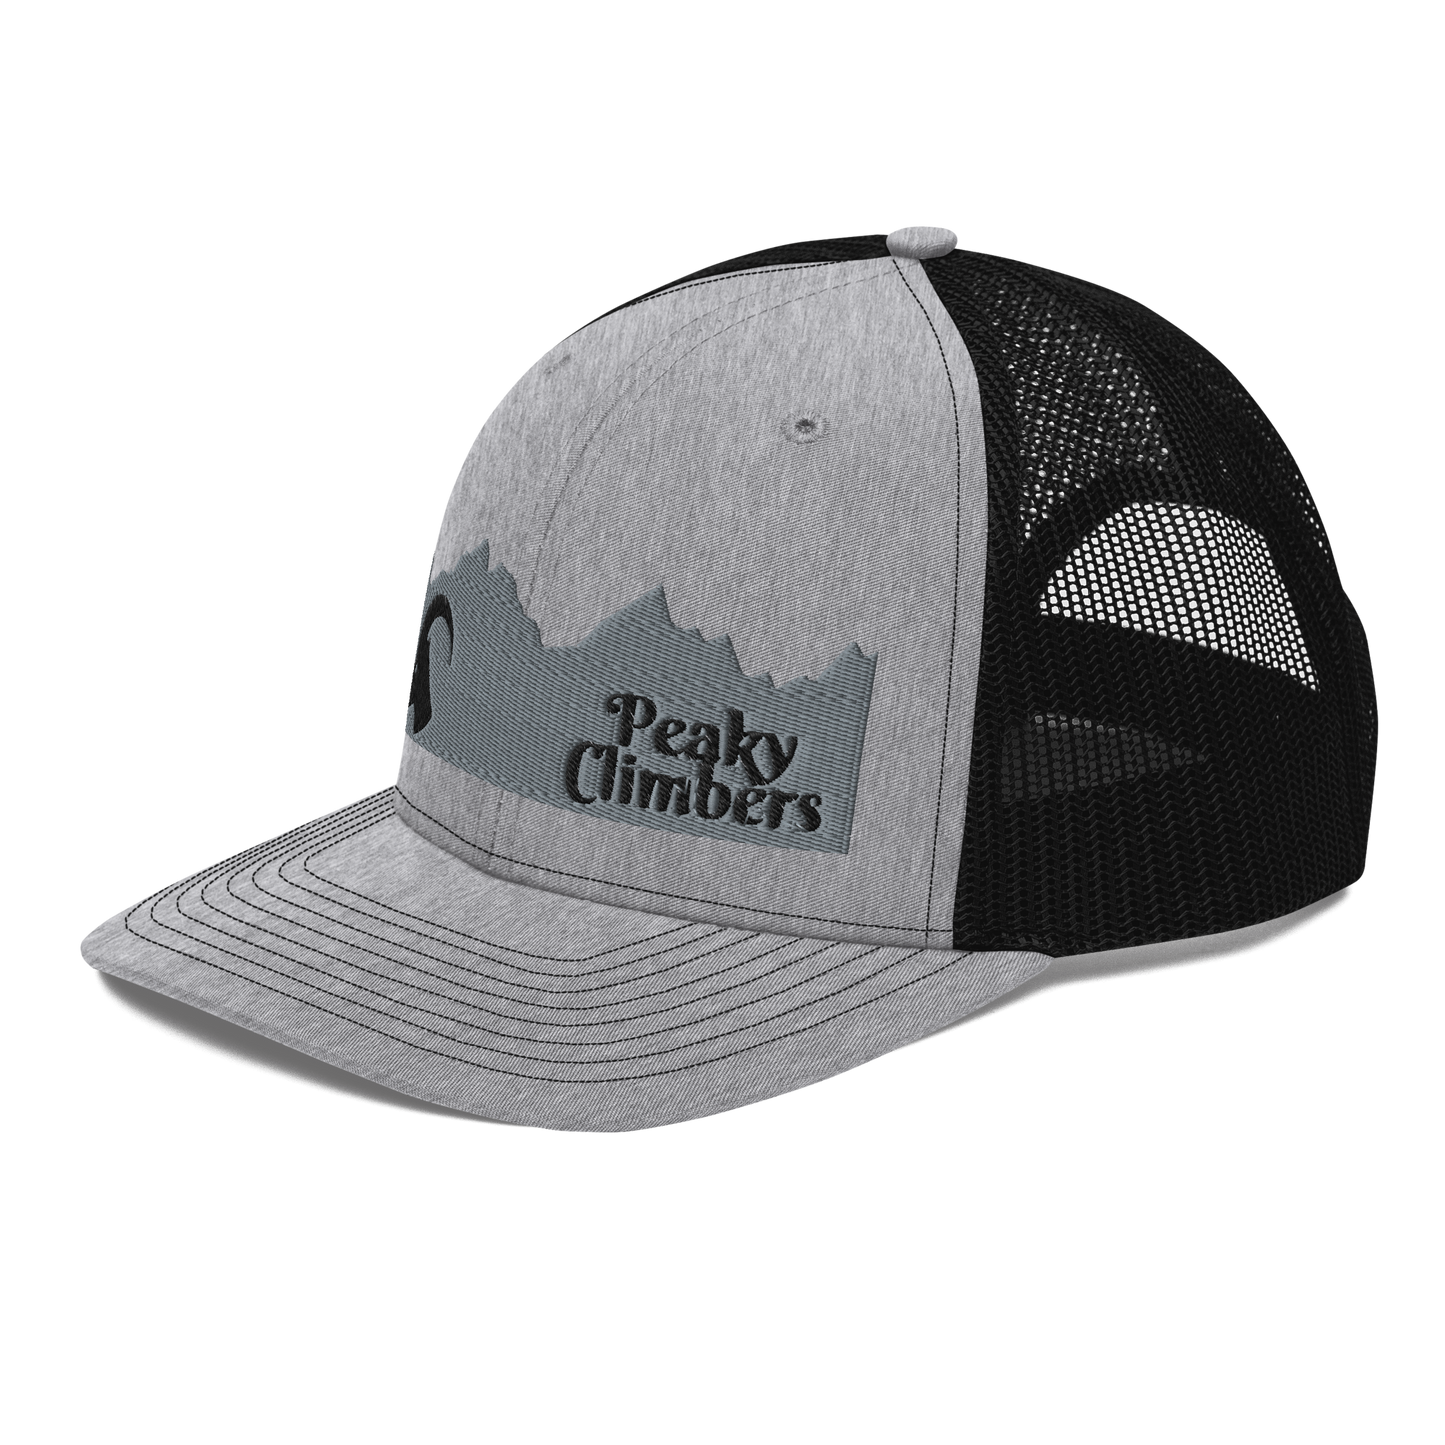 Peaky Edge Ibex Cap